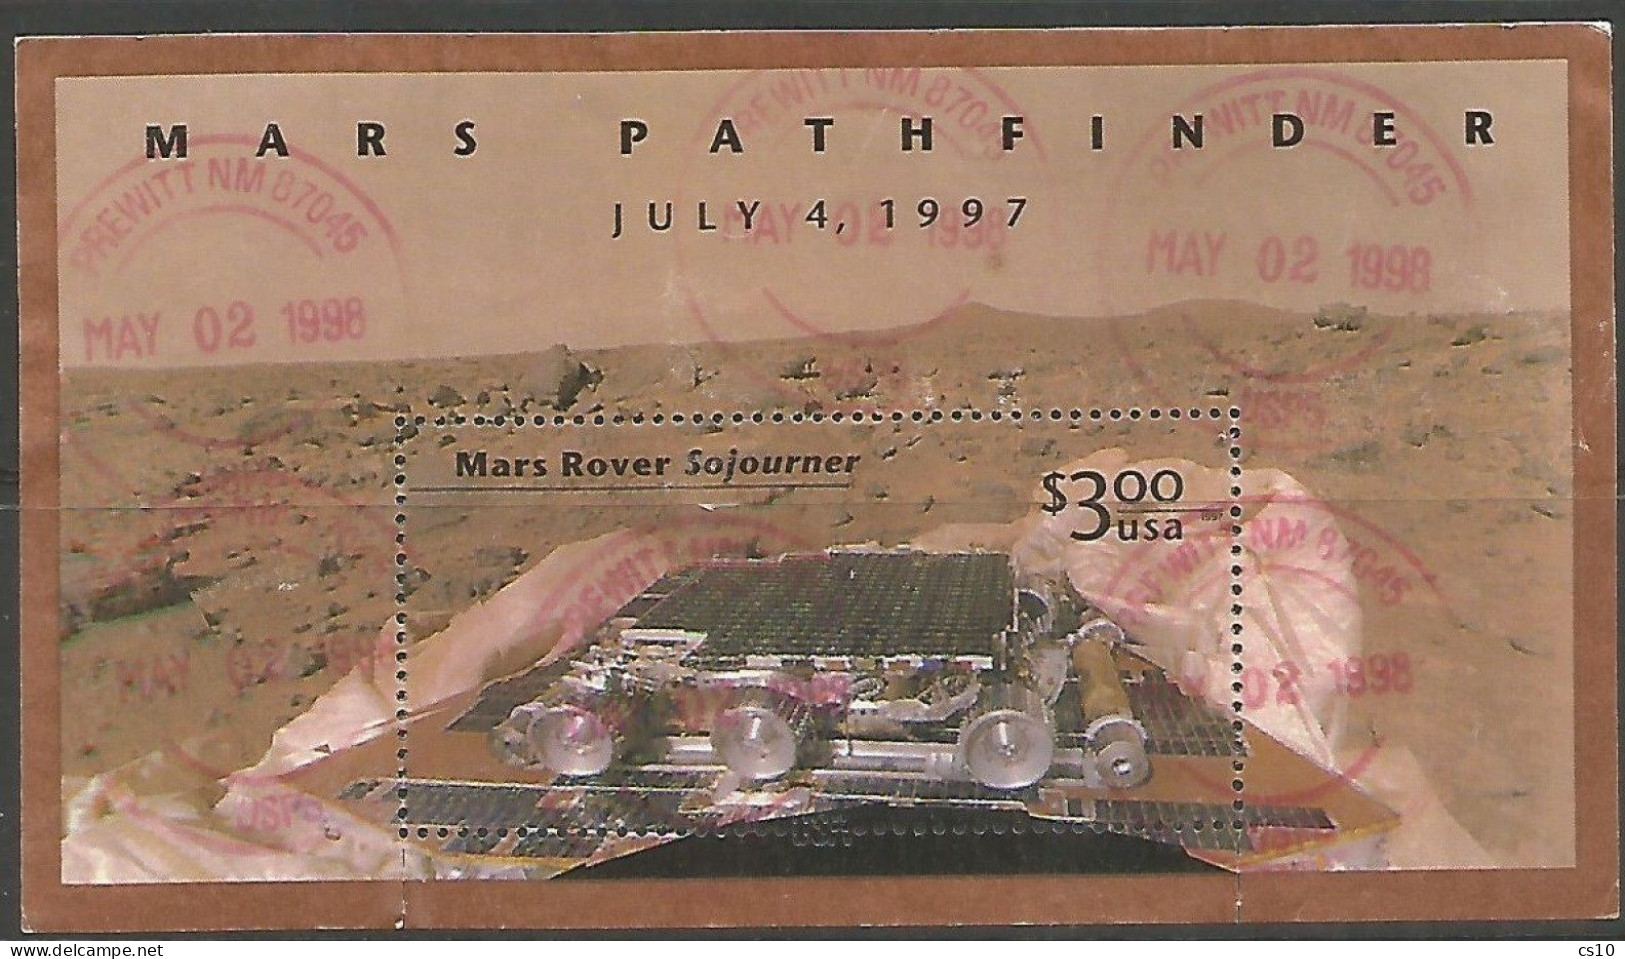 USA 1997 Mars Pathfinder SC.# 3178 S/S Postally Used (1998) Postally Used - VFU Condition - Stati Uniti